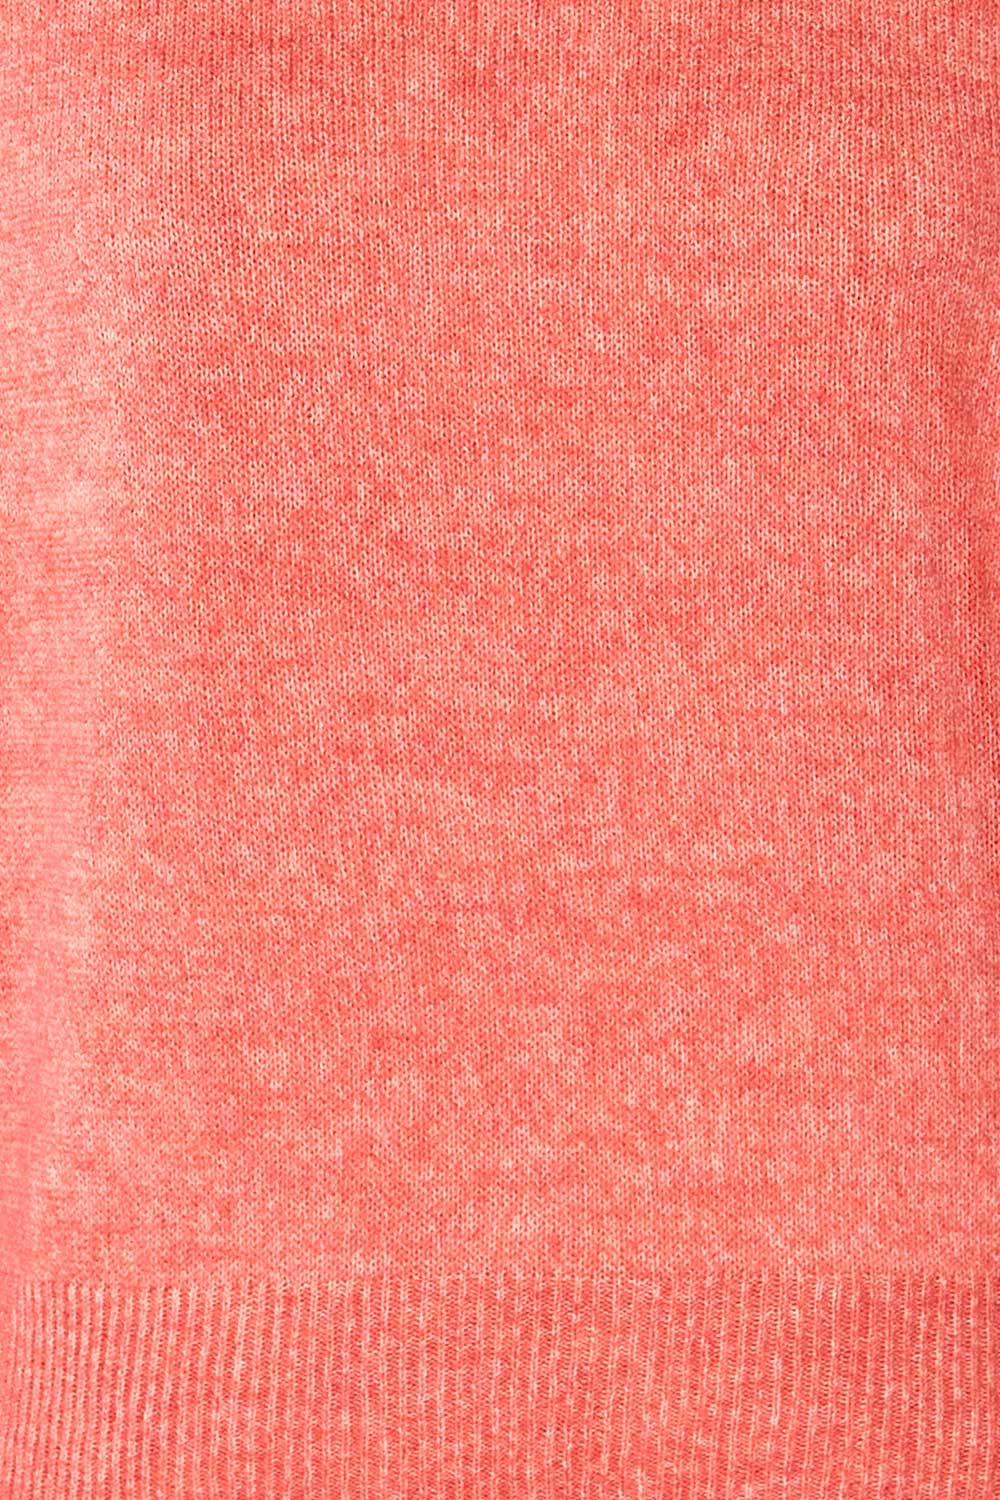 Lenes Coral Melange Knit Sweater | La petite garçonne  fabric